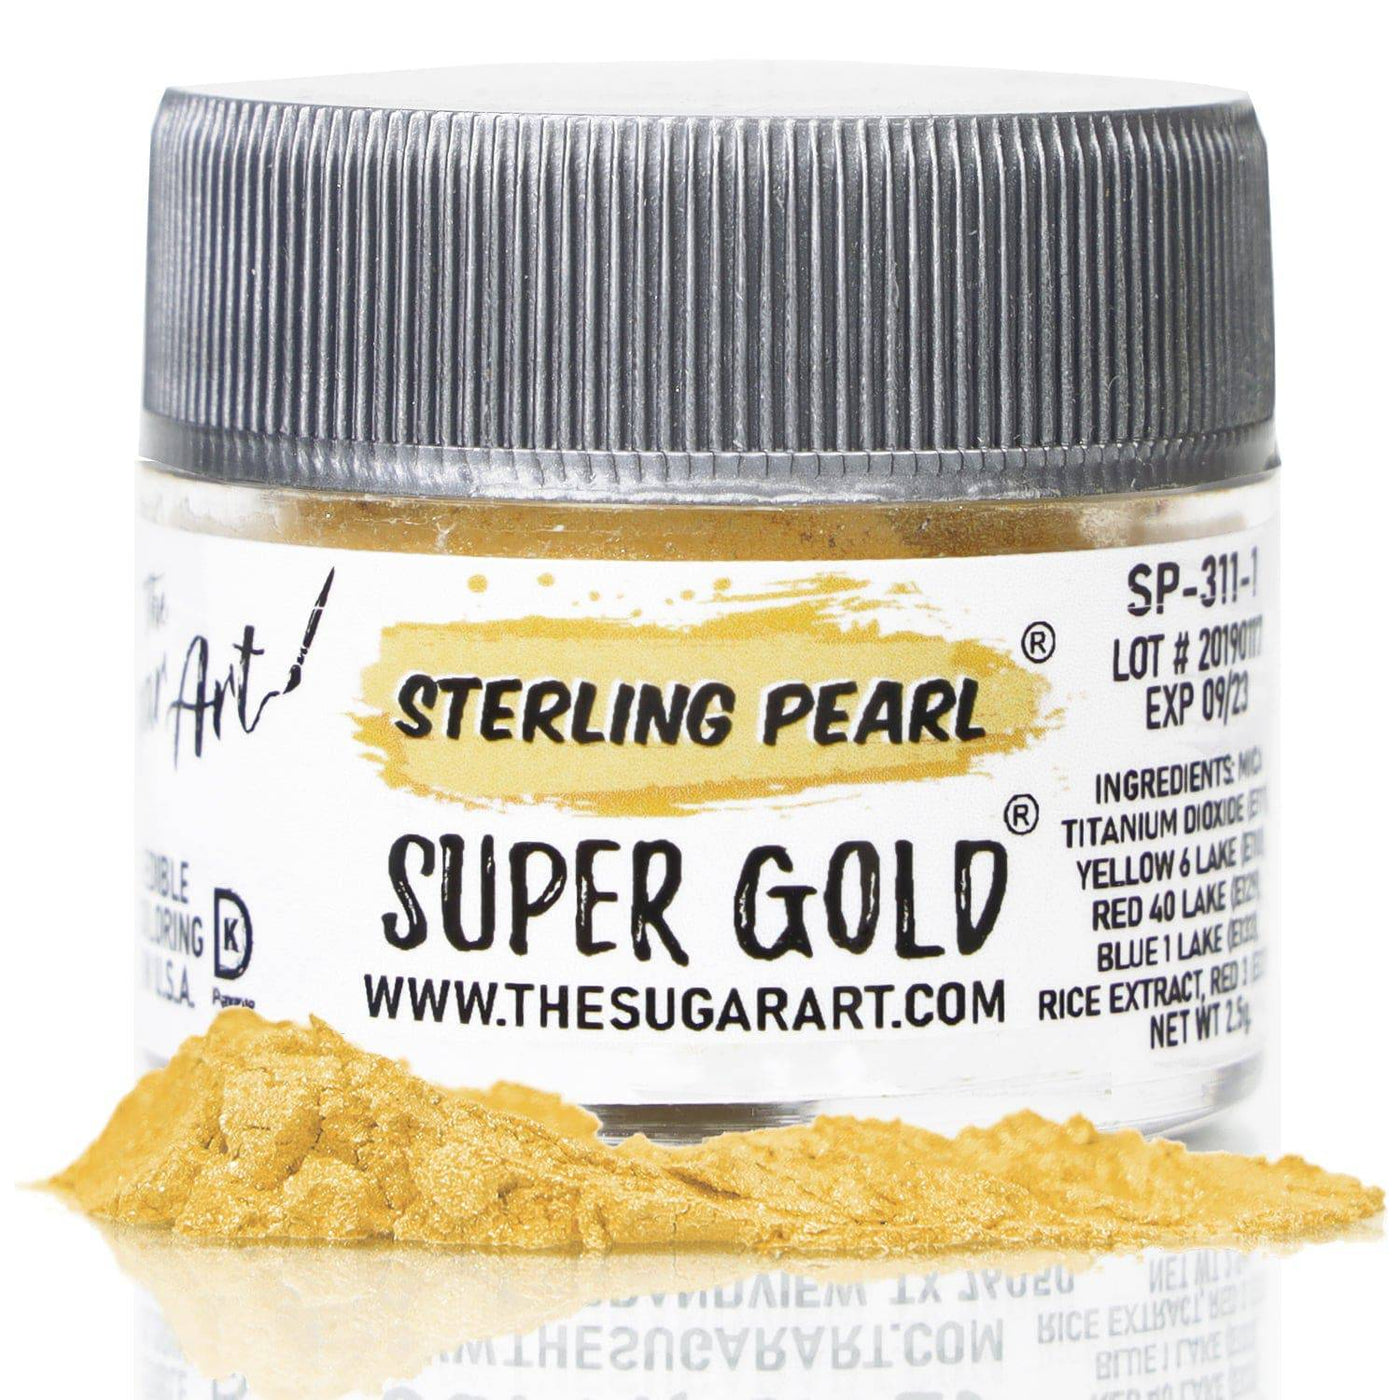 Edible Artisan Gold Leaf Sugar Pearl Cachous – Cake & Baking Supplies –  Original Artisan Gold